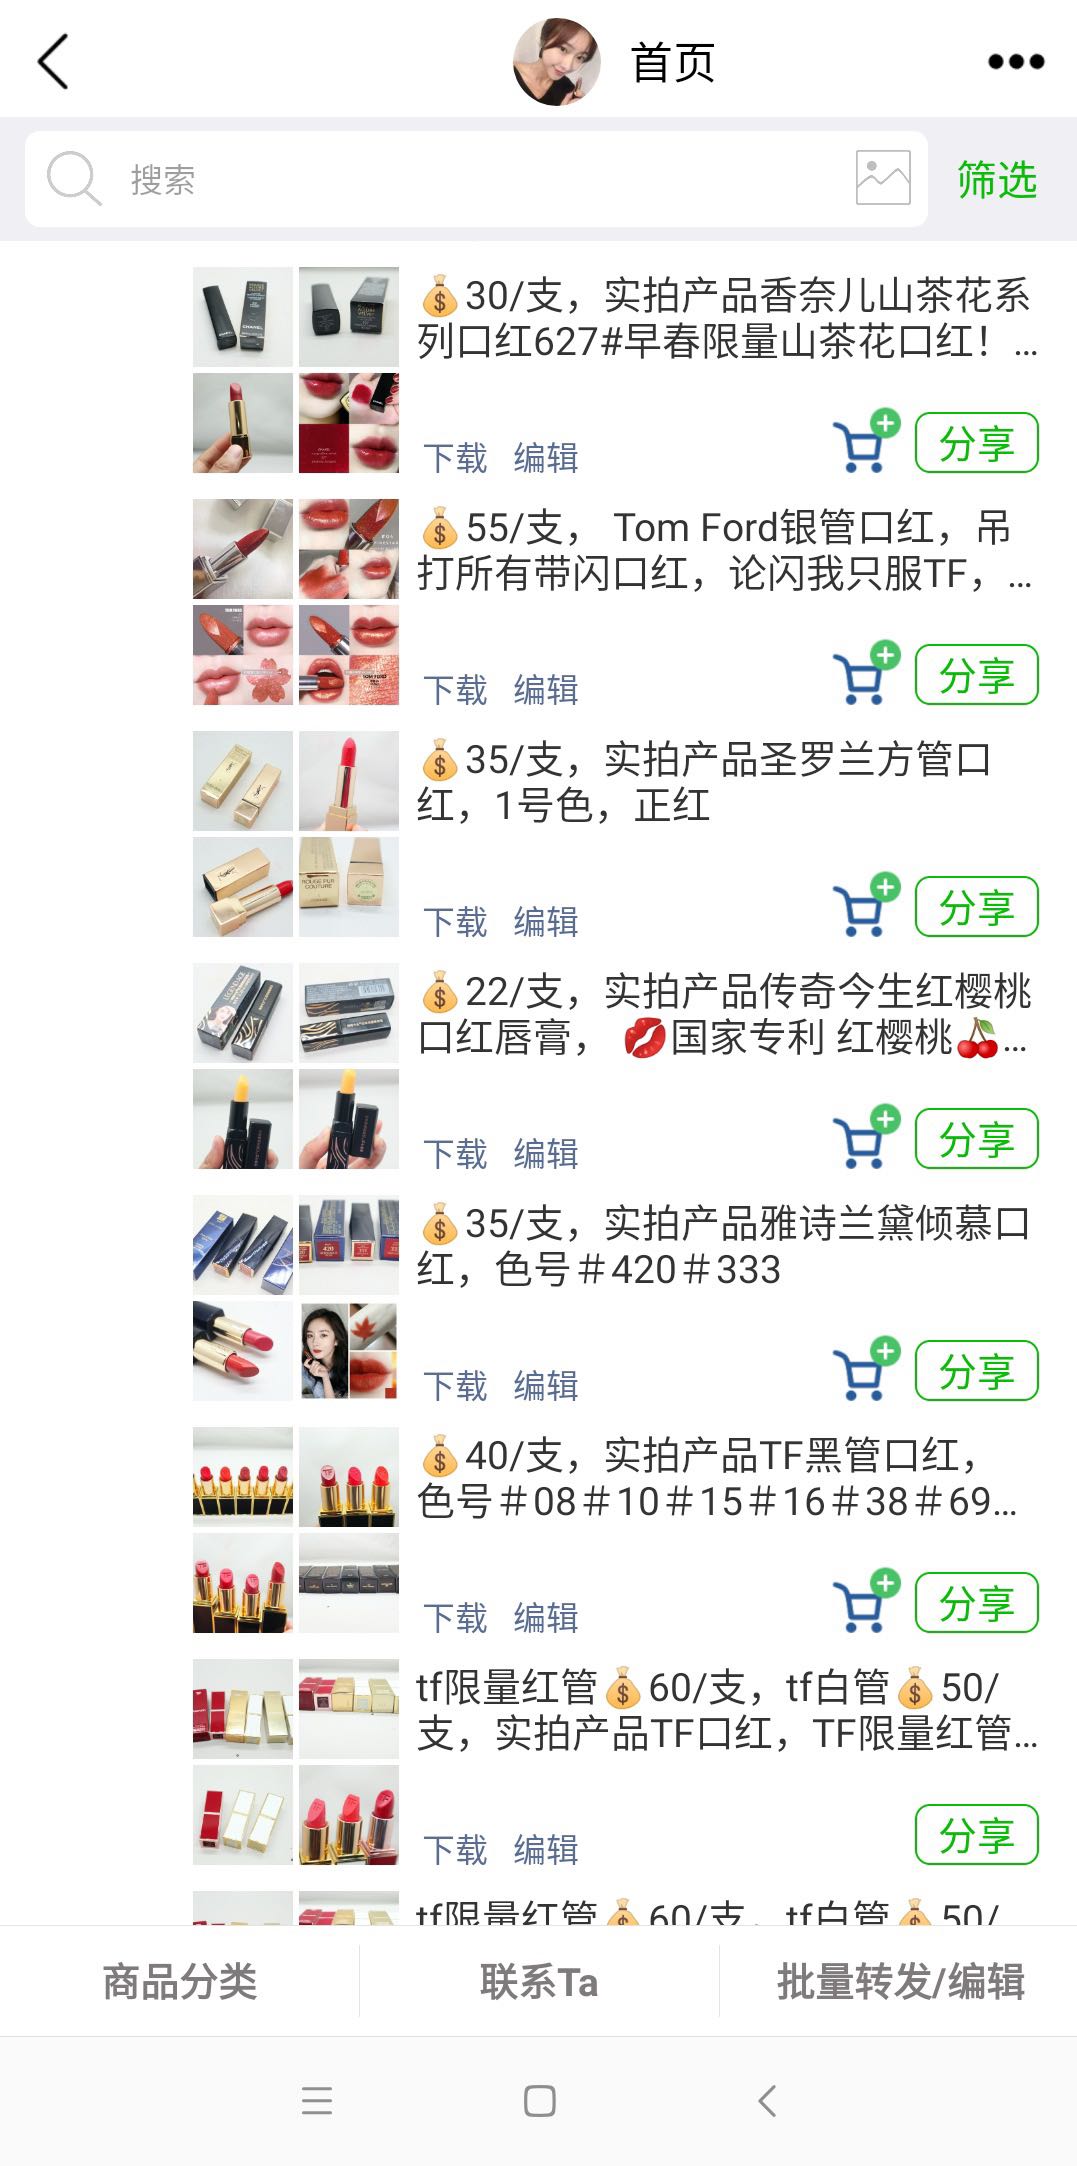 一名微信昵称为“美婷美妆”的微商相册，声称“货”来自汕头潮南区，相册发布有各类低价仿制口红。